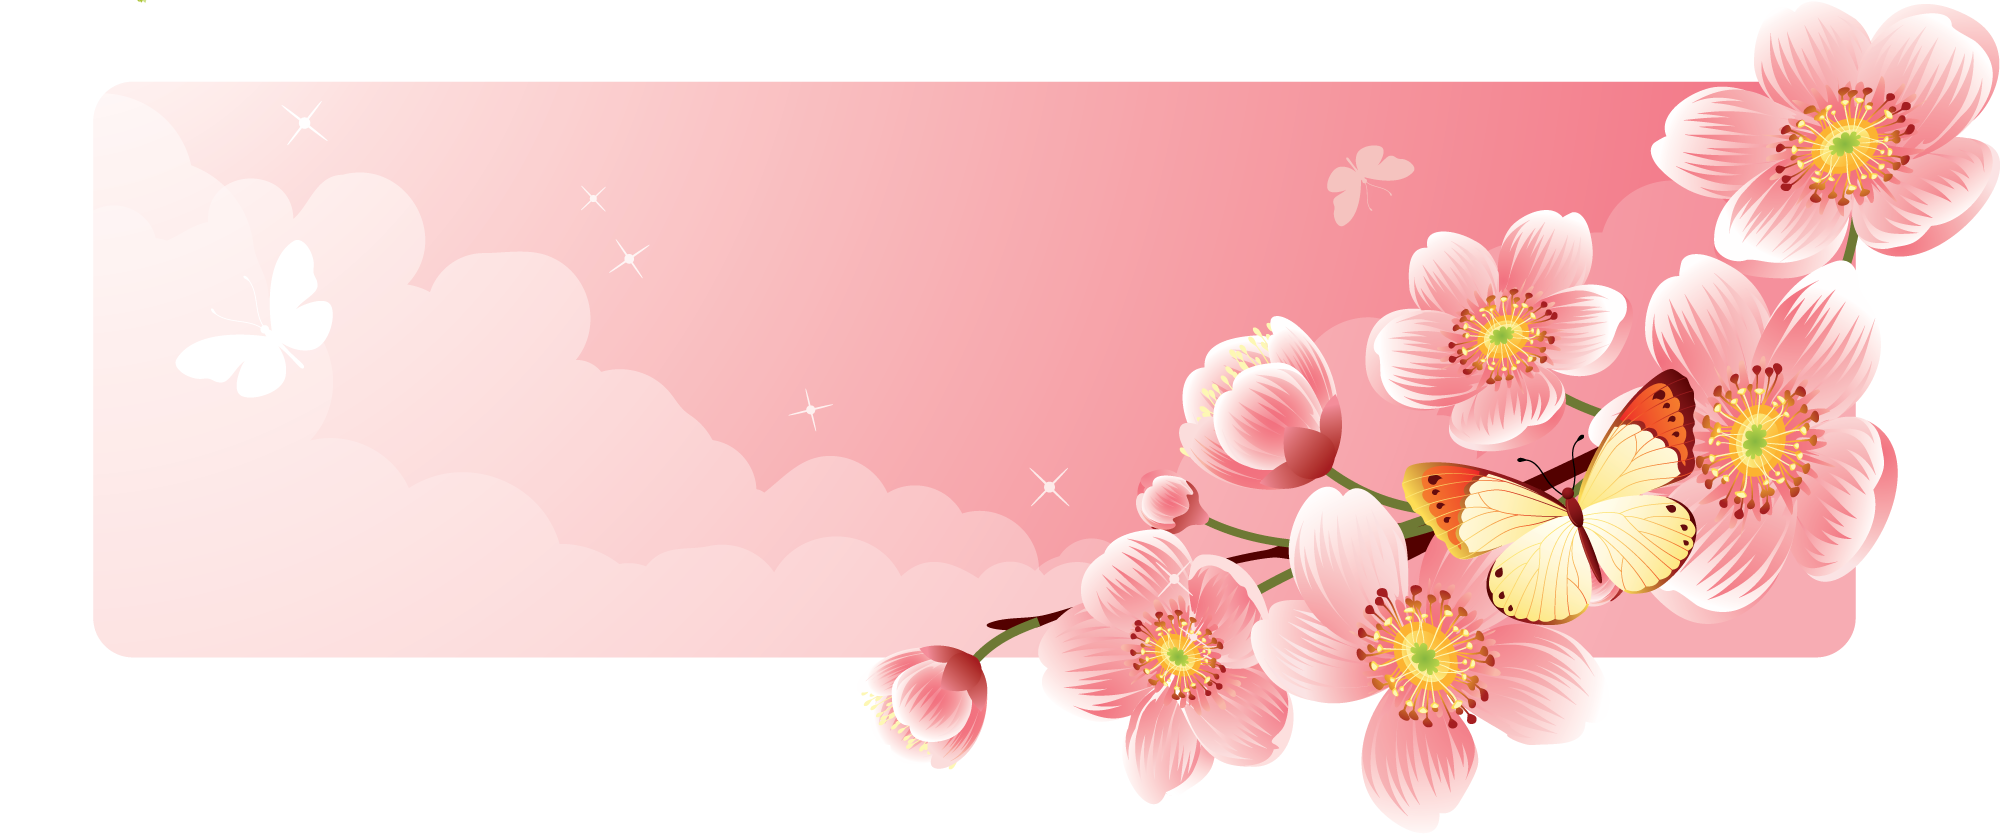 花や葉のイラスト フリー素材 バナー タイトル枠no 011 ピンク 蝶 雲